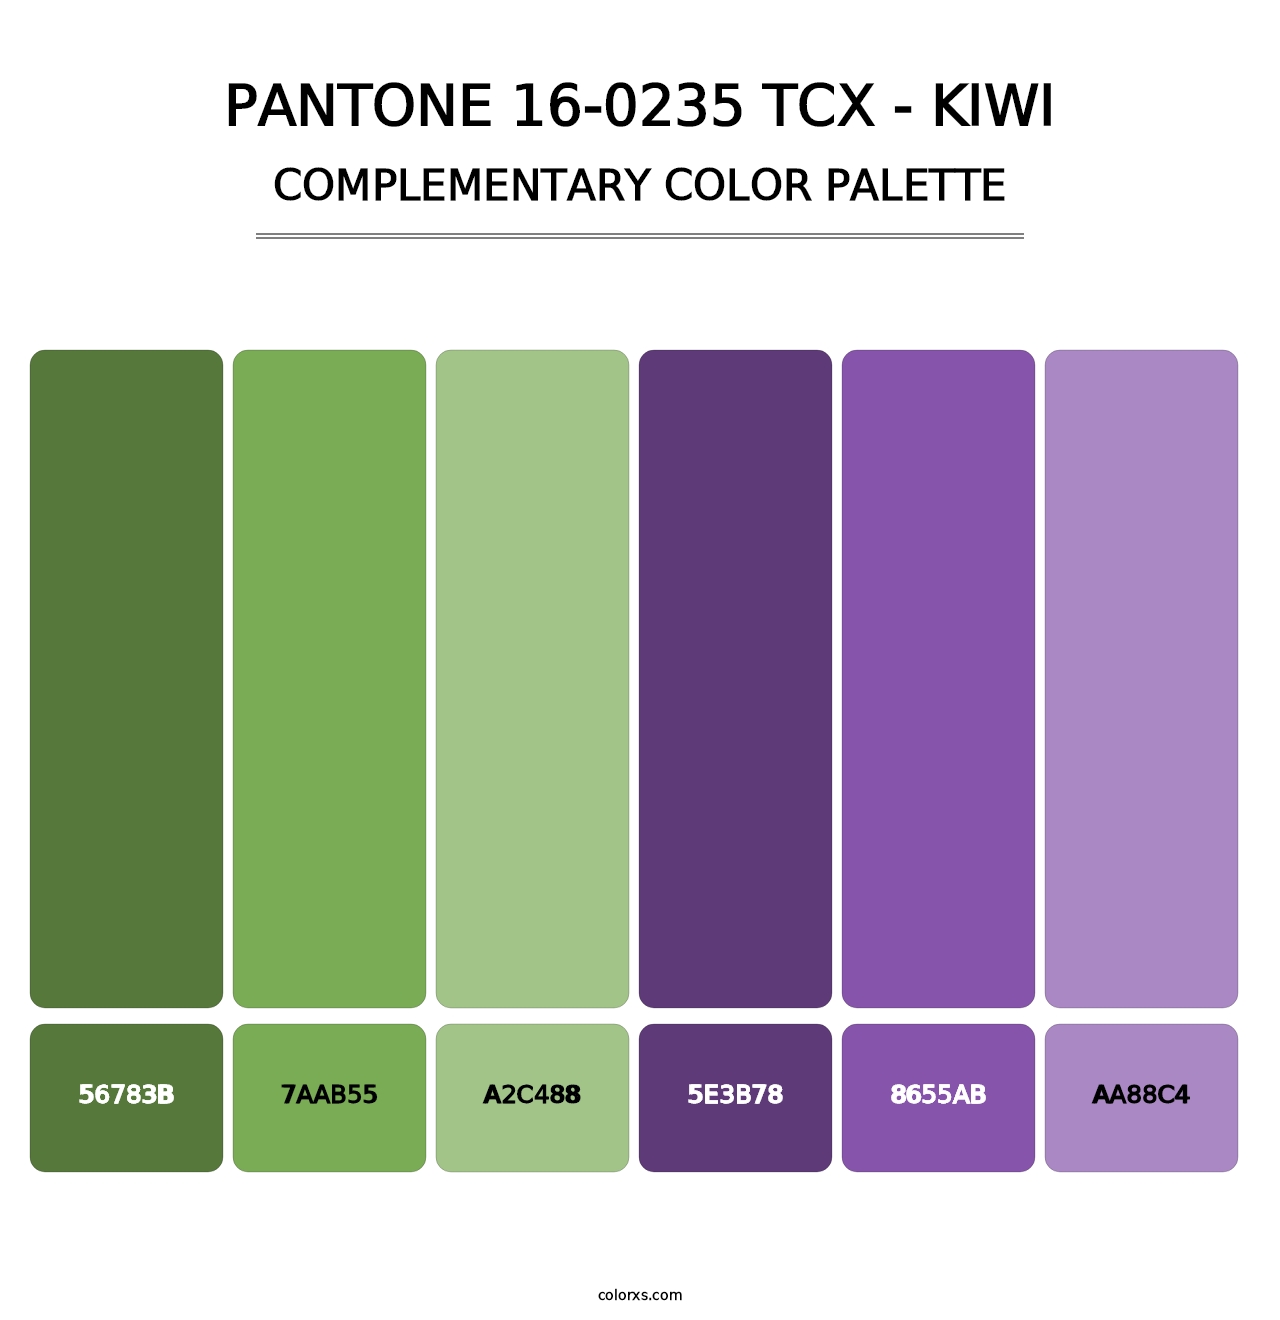 PANTONE 16-0235 TCX - Kiwi - Complementary Color Palette